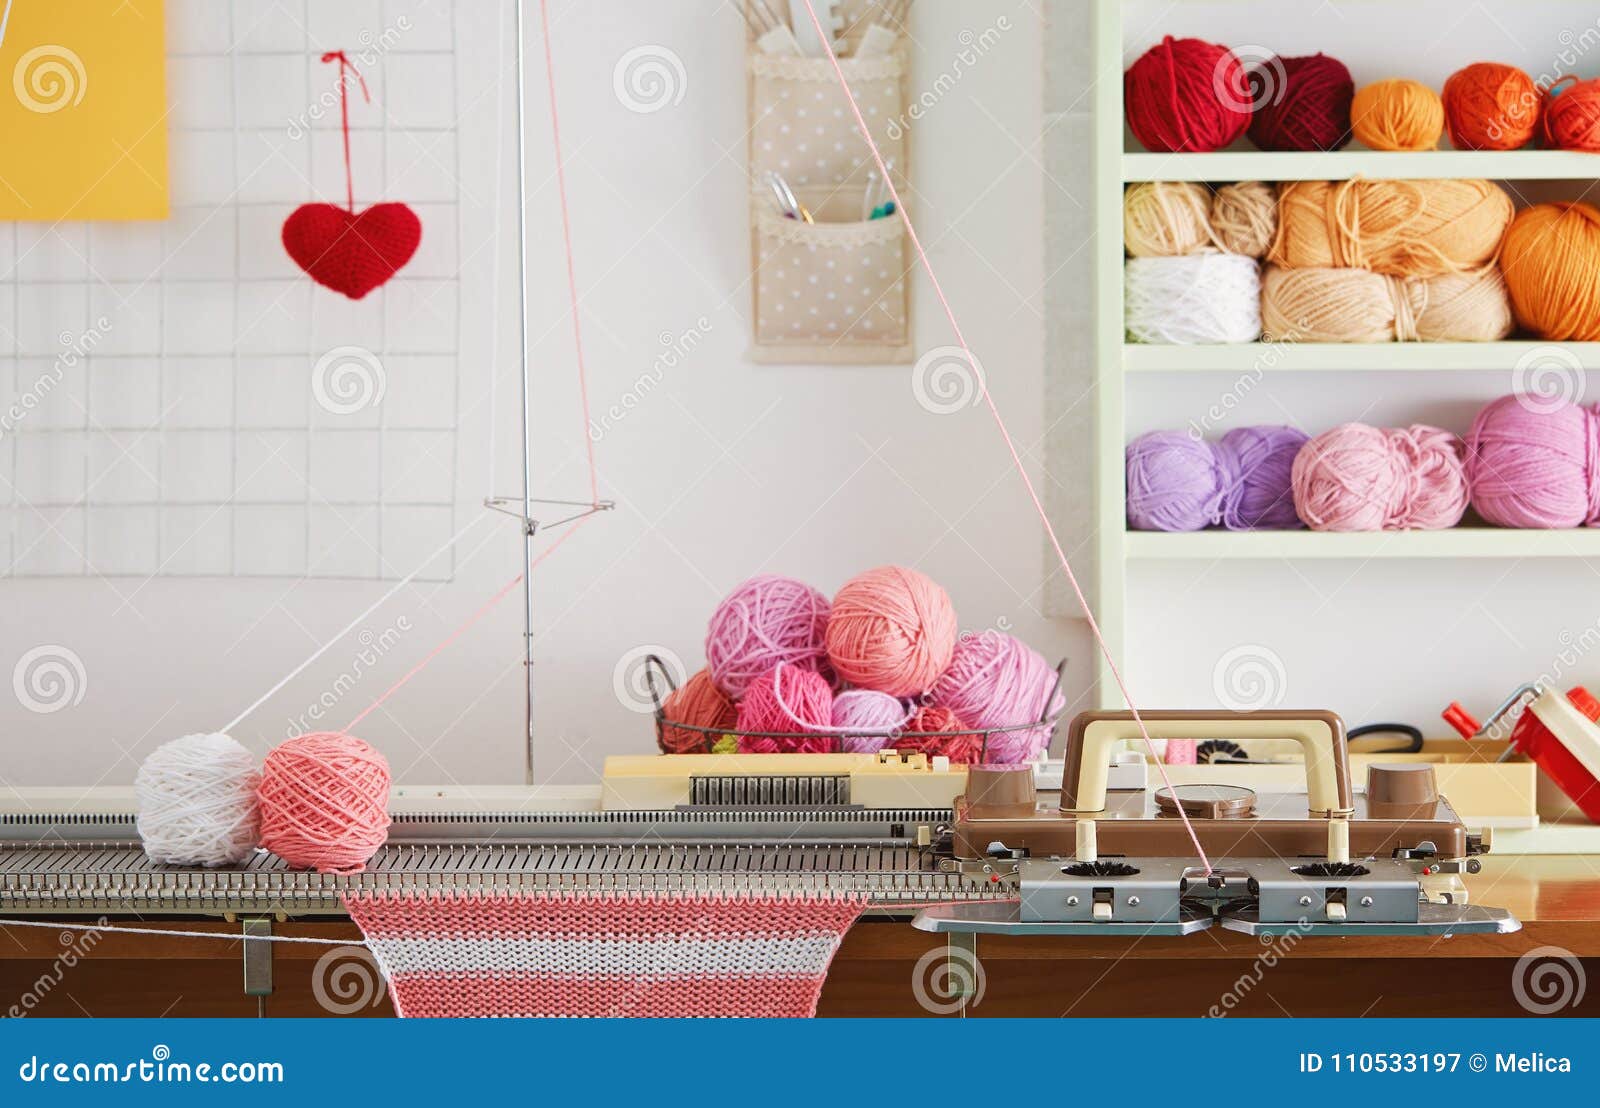 Knitting Machine Knitting Machine